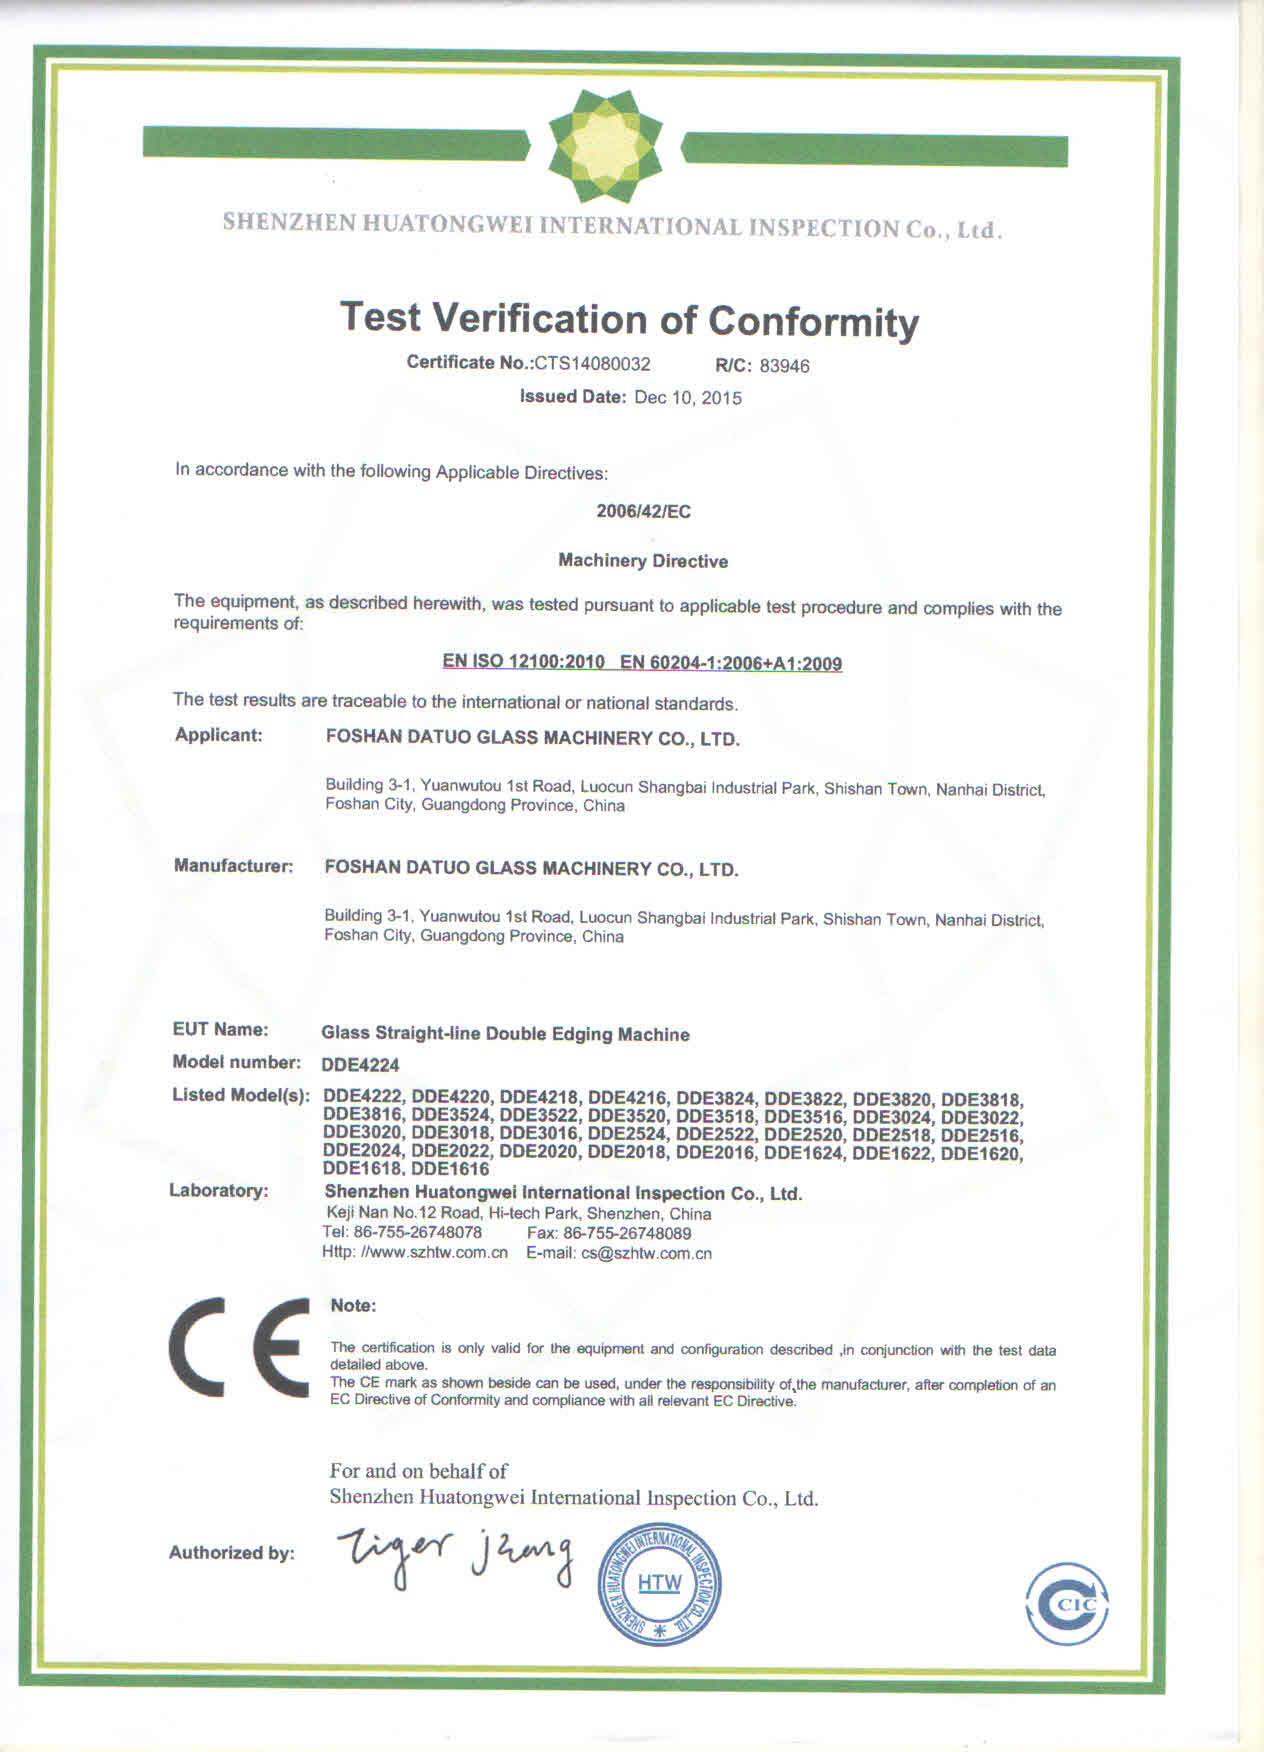 DDE4224 玻璃磨边机 CE 证书